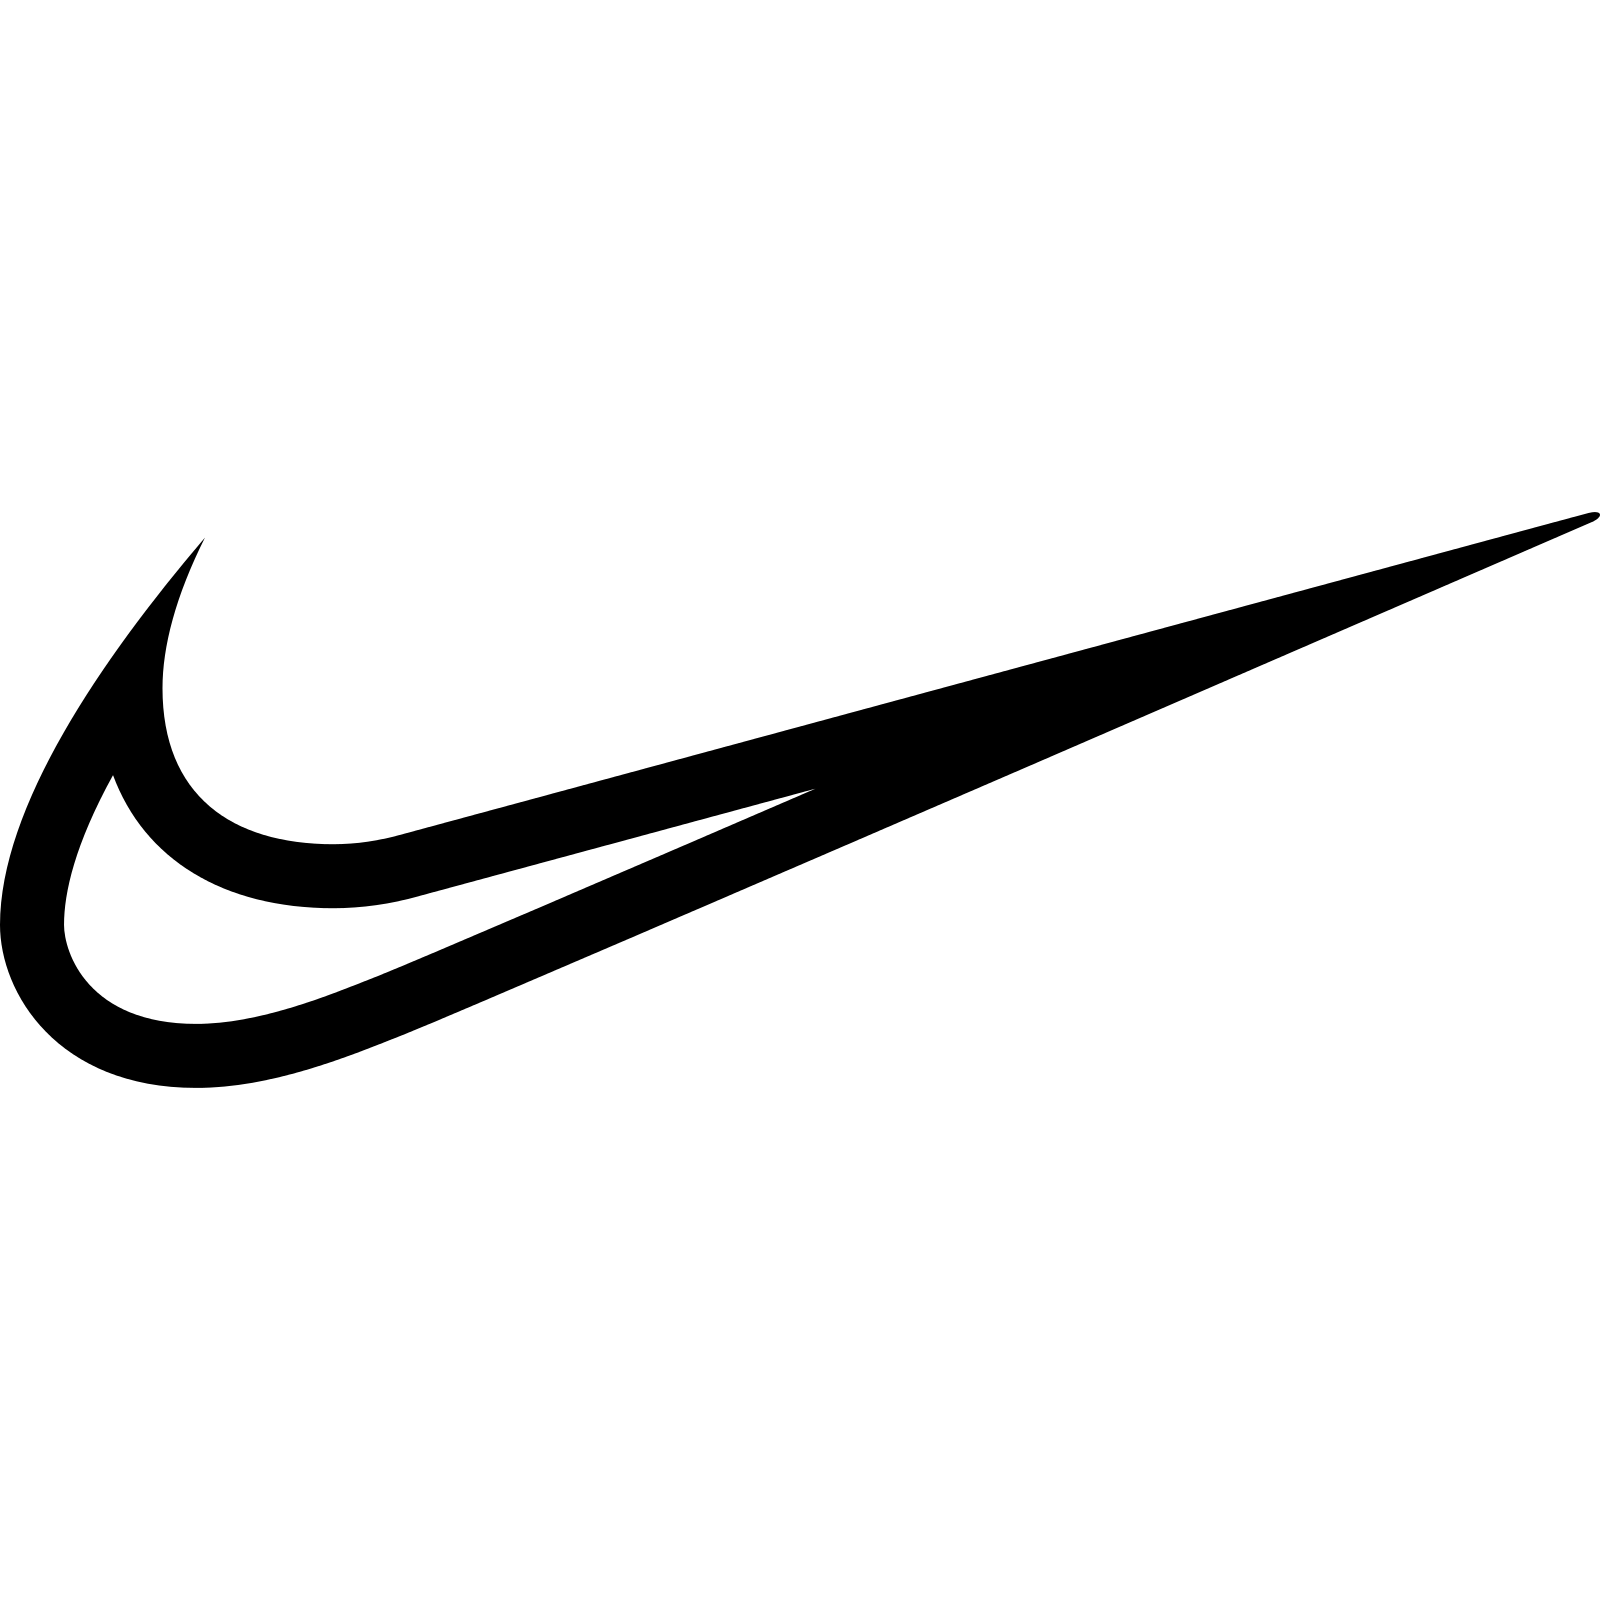 Free Nike Swoosh Png, Download Free Nike Swoosh Png Png Images, Free ...